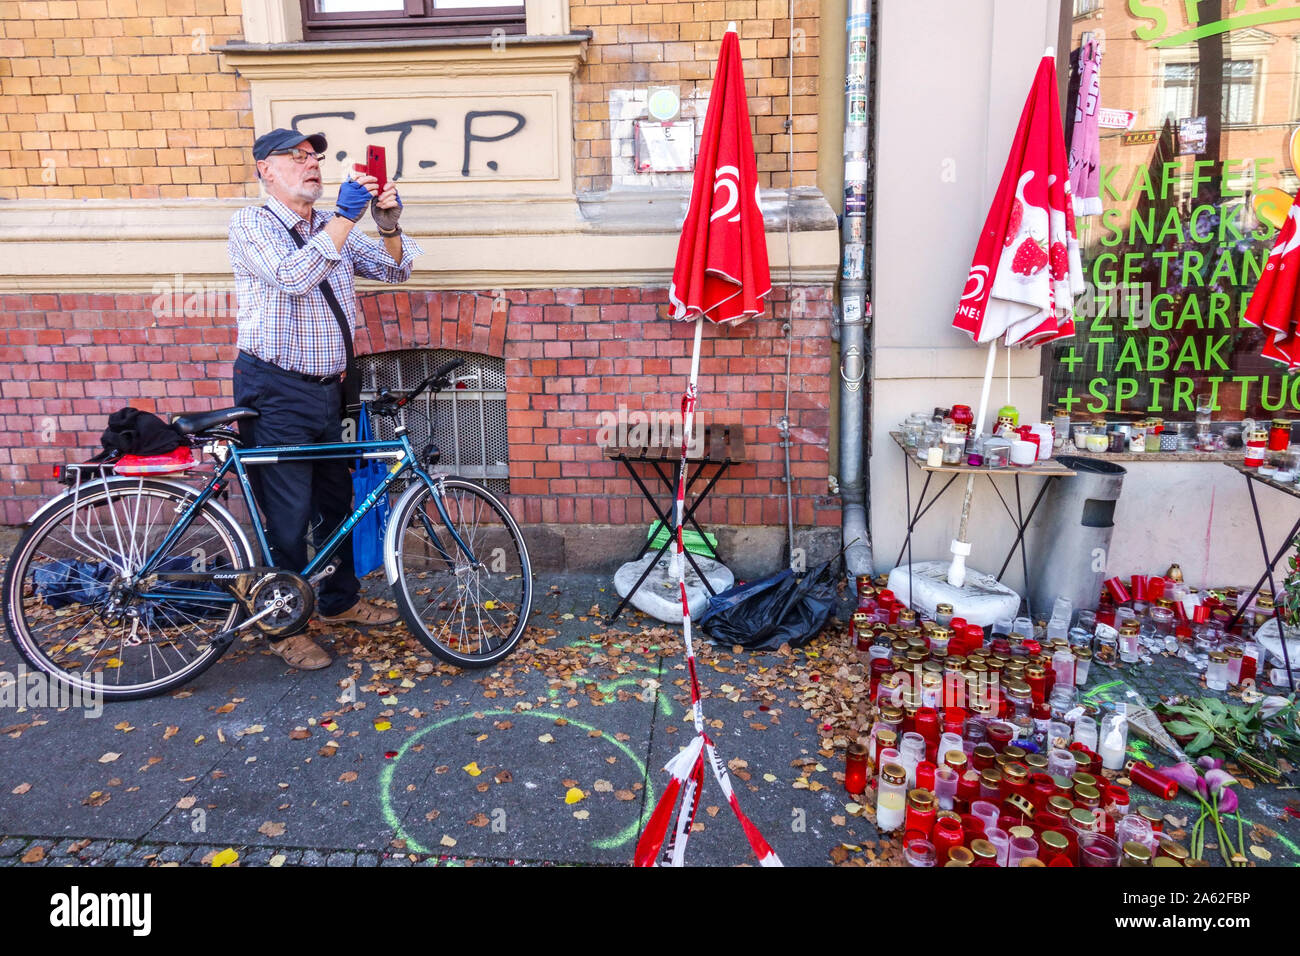 Halle (Saale) Deutschland Angriff Fast food Ort, wo man der Opfer getötet wurde, Kevin S, Blumen Kerzen Speicher platz Mann die Bilder Stockfoto